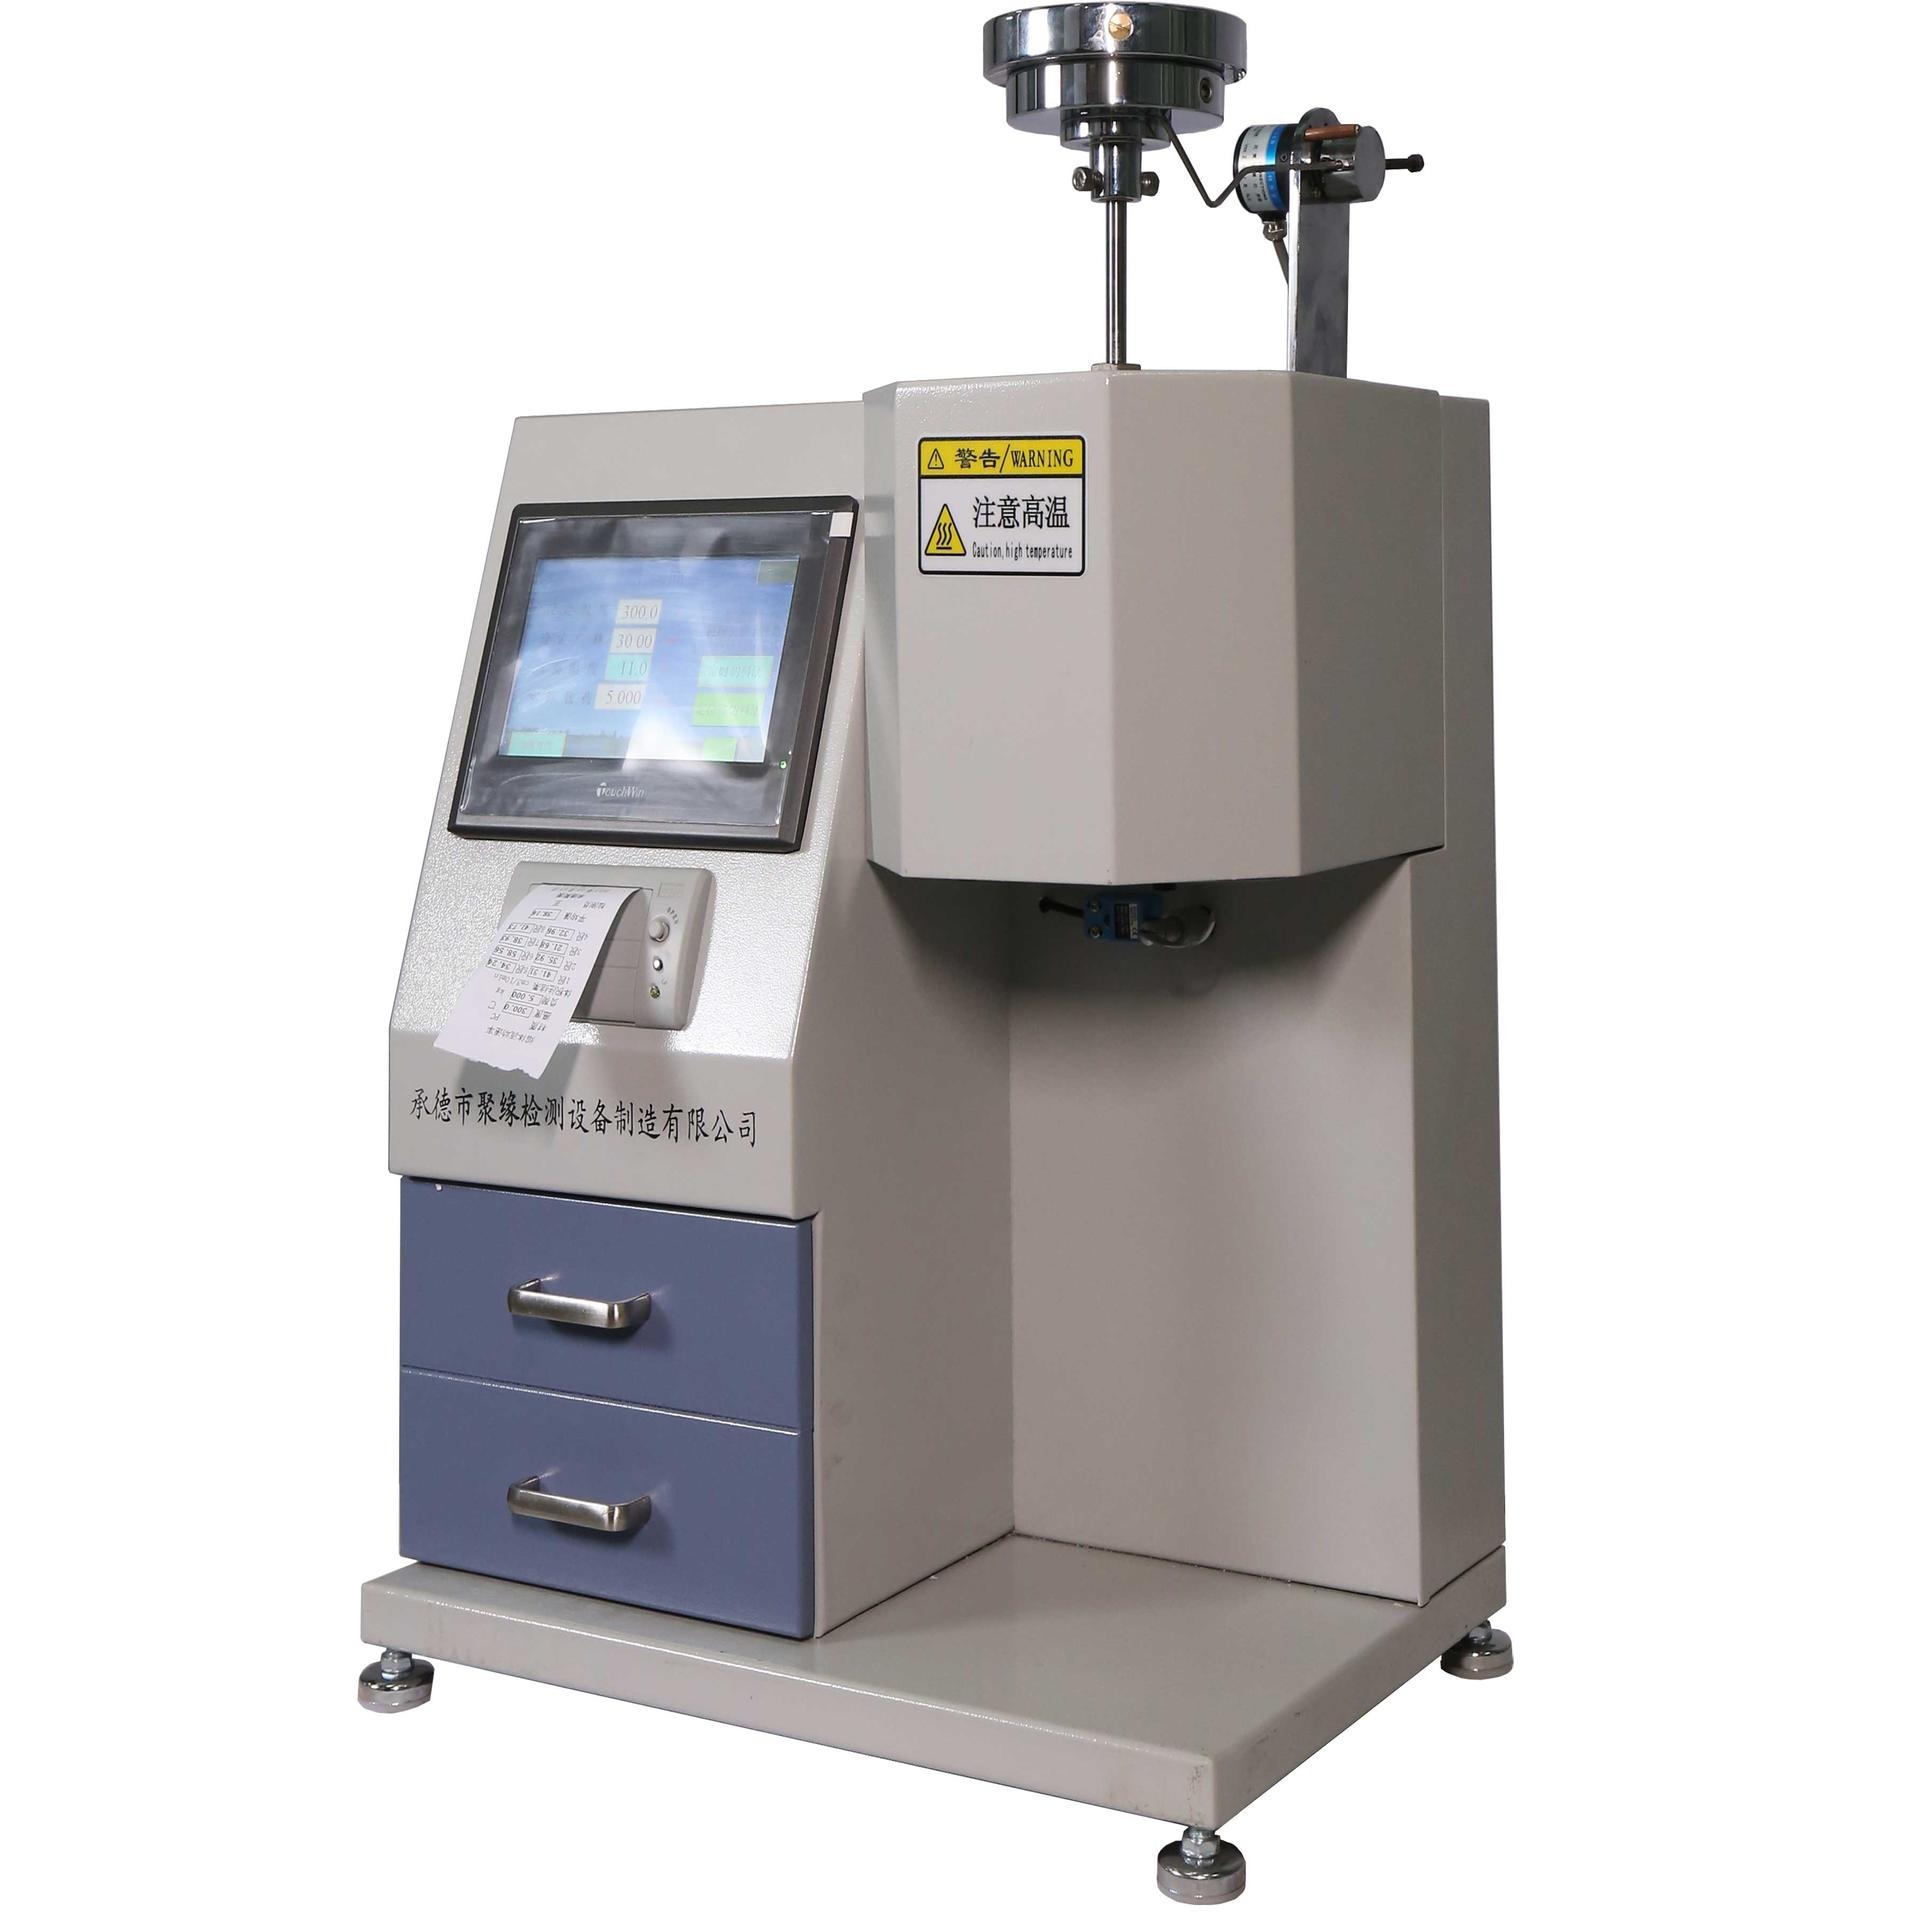 XNR-400D熔体流动速率仪 熔指仪 熔体流动速率测定仪 触摸屏控制智能操控 微型打印报告